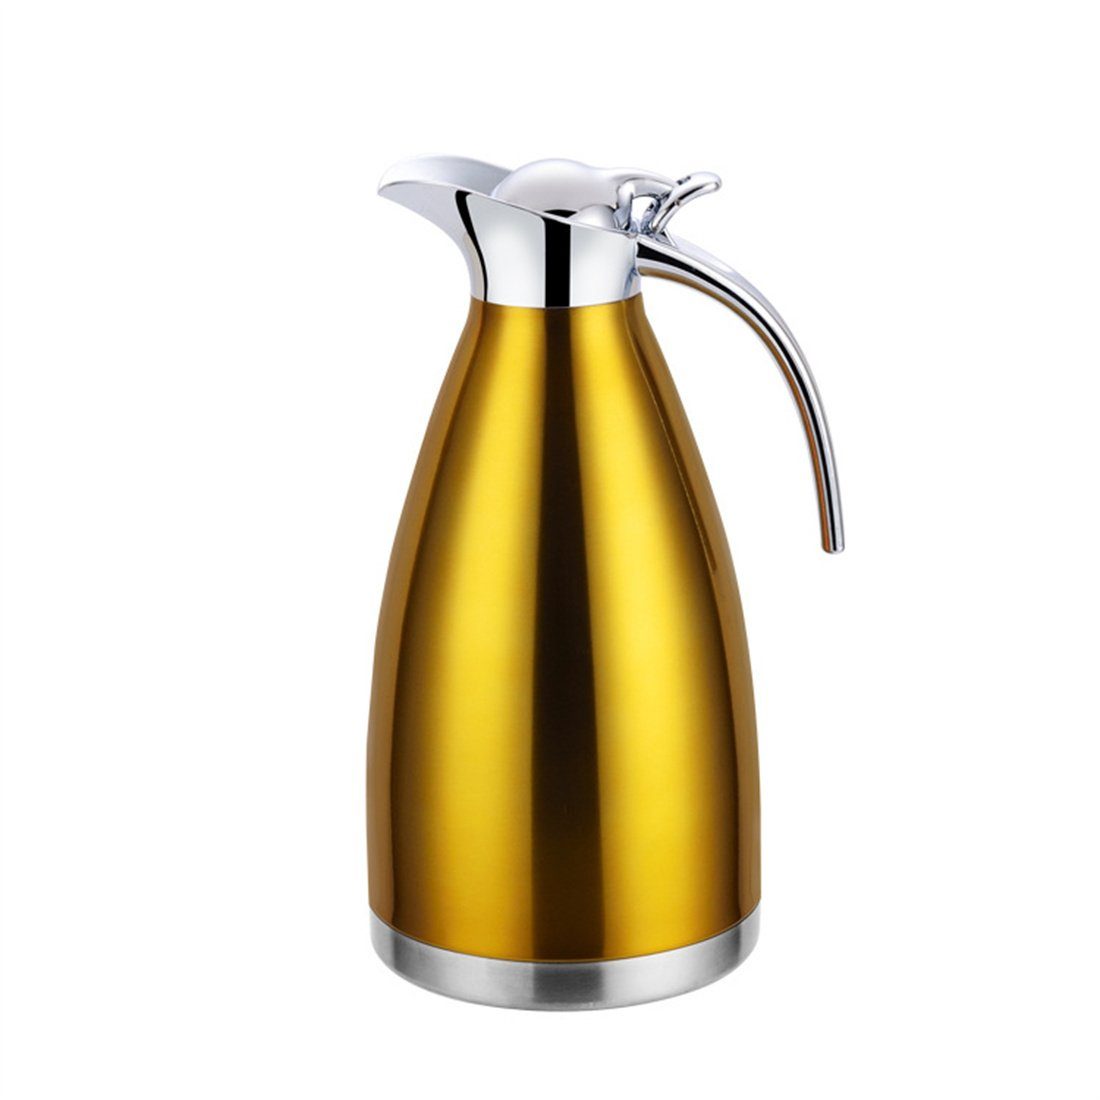 DÖRÖY Isolierkanne Isolierter Edelstahl-Wasserkocher, Heißwasserkocher, Gold Kaffeekanne 2.0L